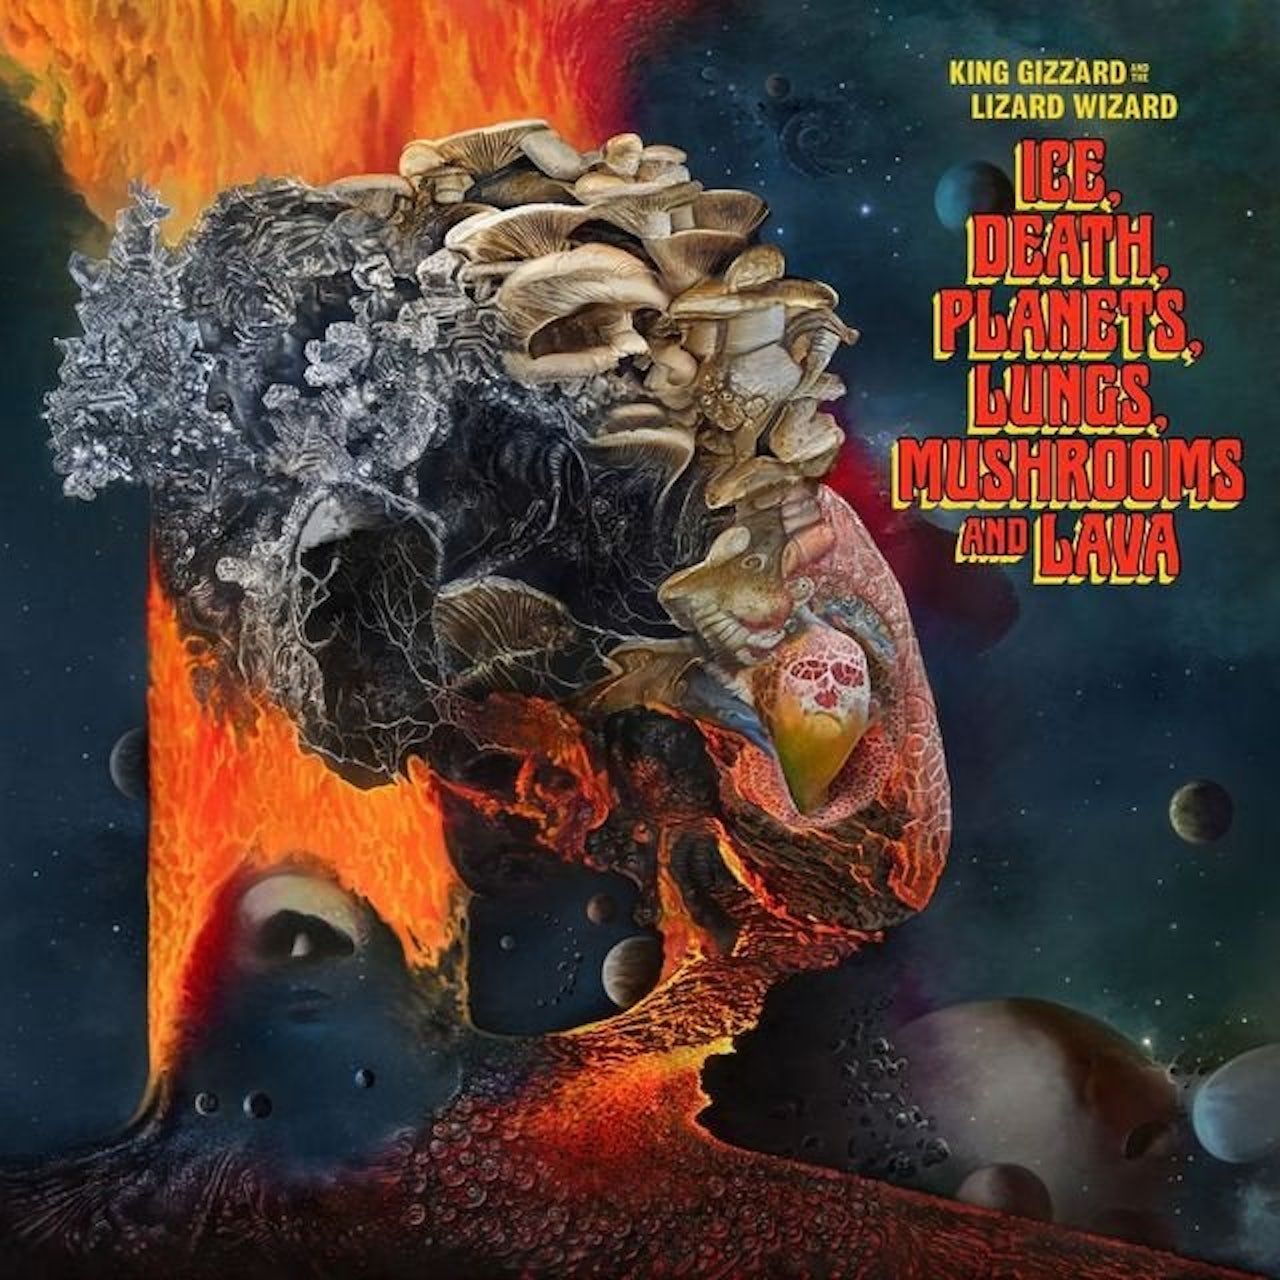 0842812170164, Виниловая пластинка King Gizzard & The Lizard Wizard, Ice, Death, Planets, Lungs, Mushroom And Lava фото